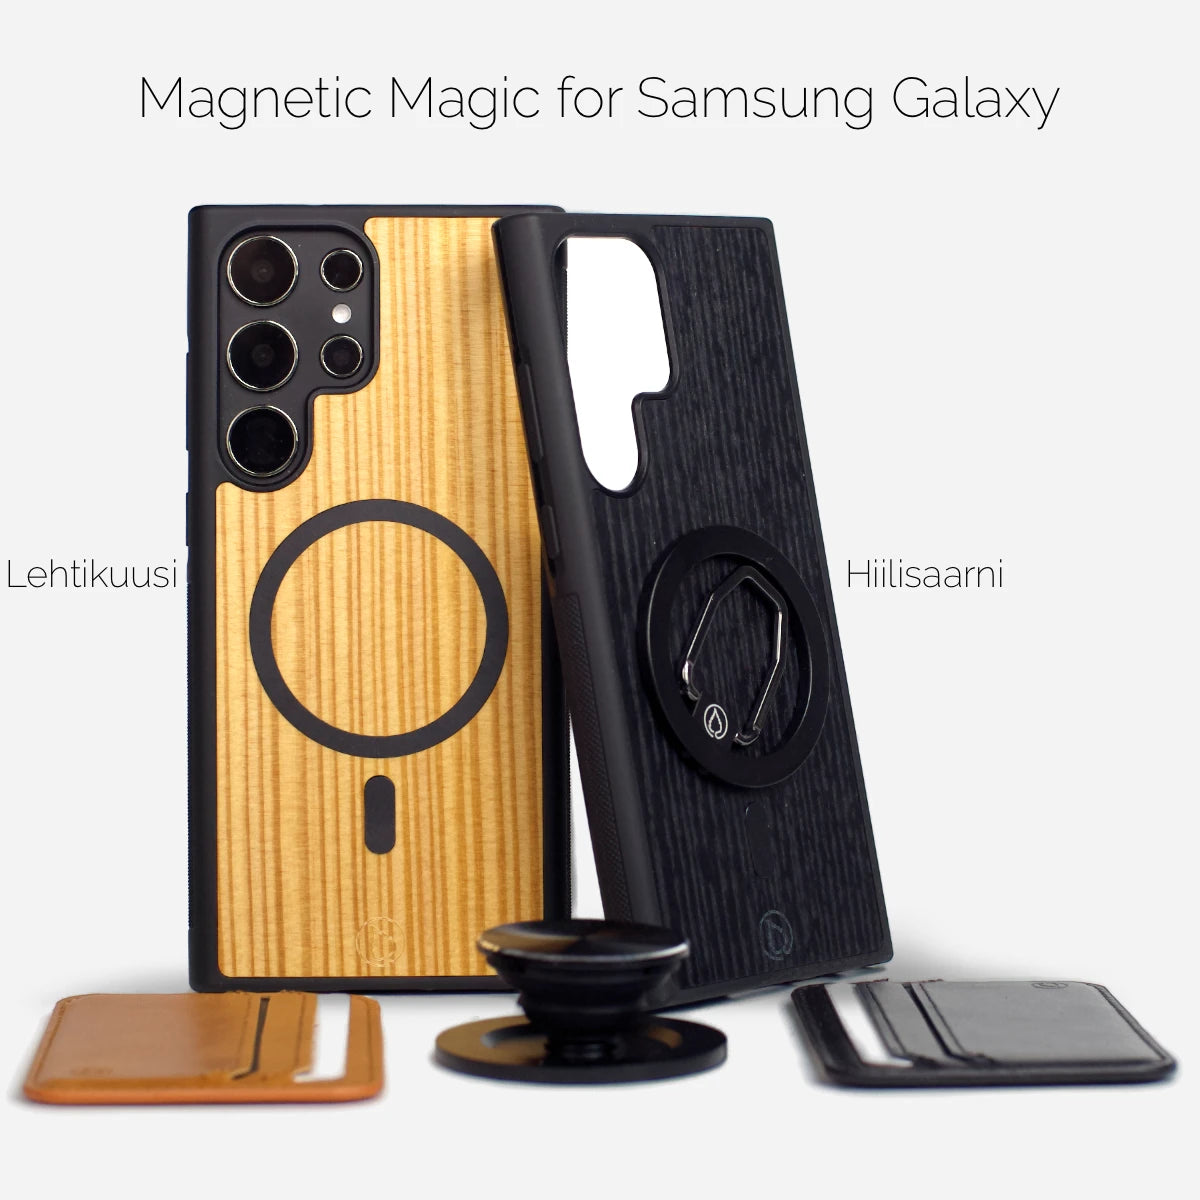 Viimeisin MagSafe-kotelo puusta ja kestävästä muovista, jossa on vahvat magneetit lisävarusteiden kiinnittämiseen. Mukana moduulit kuten Magneettinen Puhelinsormus ja Aito Nahka MagSafe-lompakko.